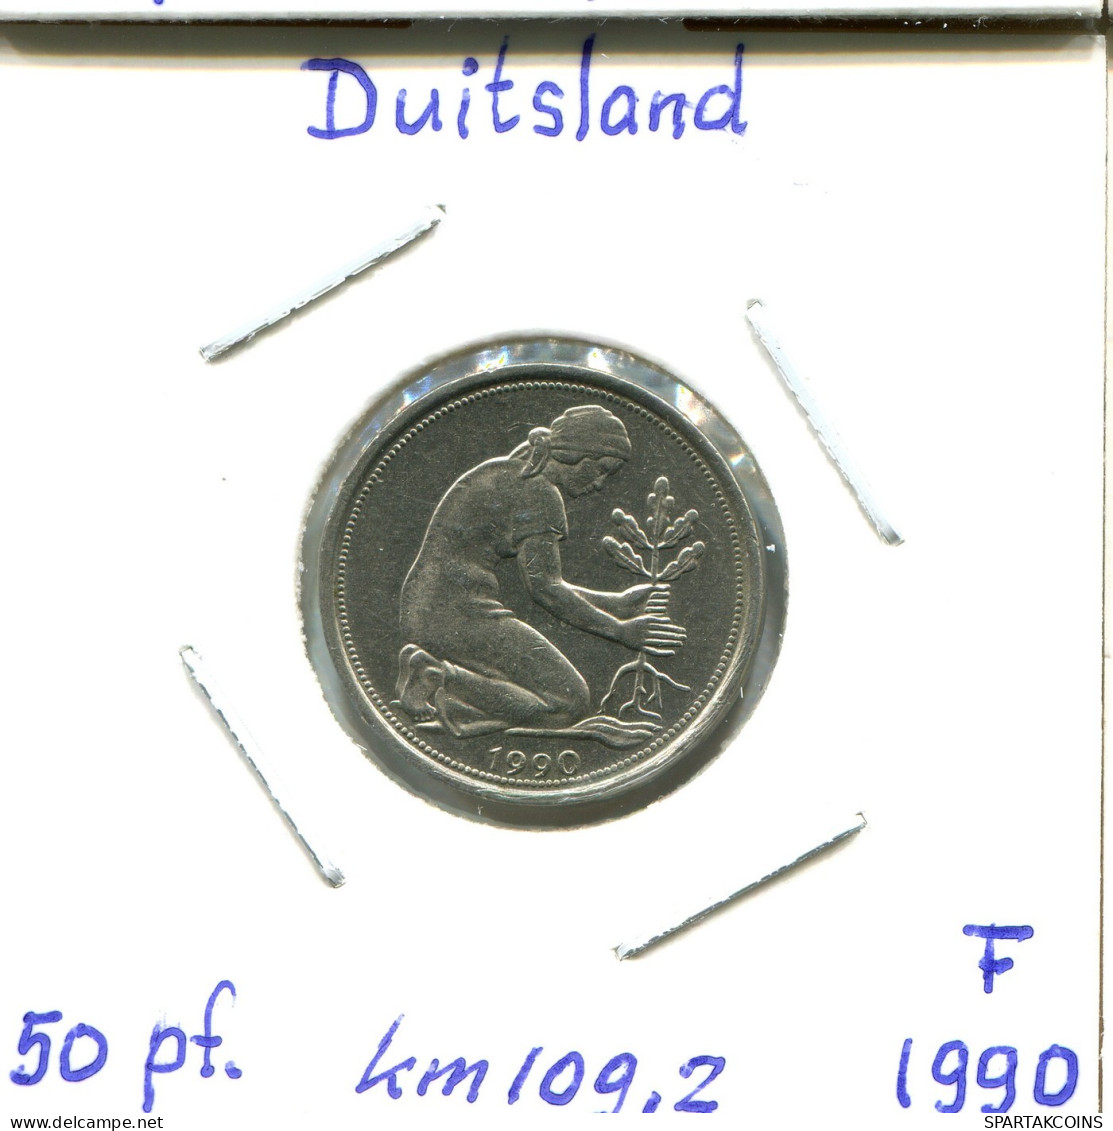 50 PFENNIG 1990 F BRD ALEMANIA Moneda GERMANY #DB637.E.A - 50 Pfennig